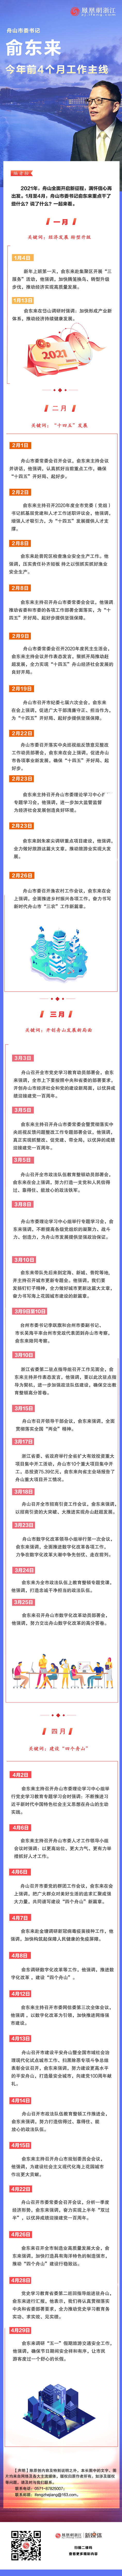 关键词 | 看舟山市委书记俞东来的2021年前四月